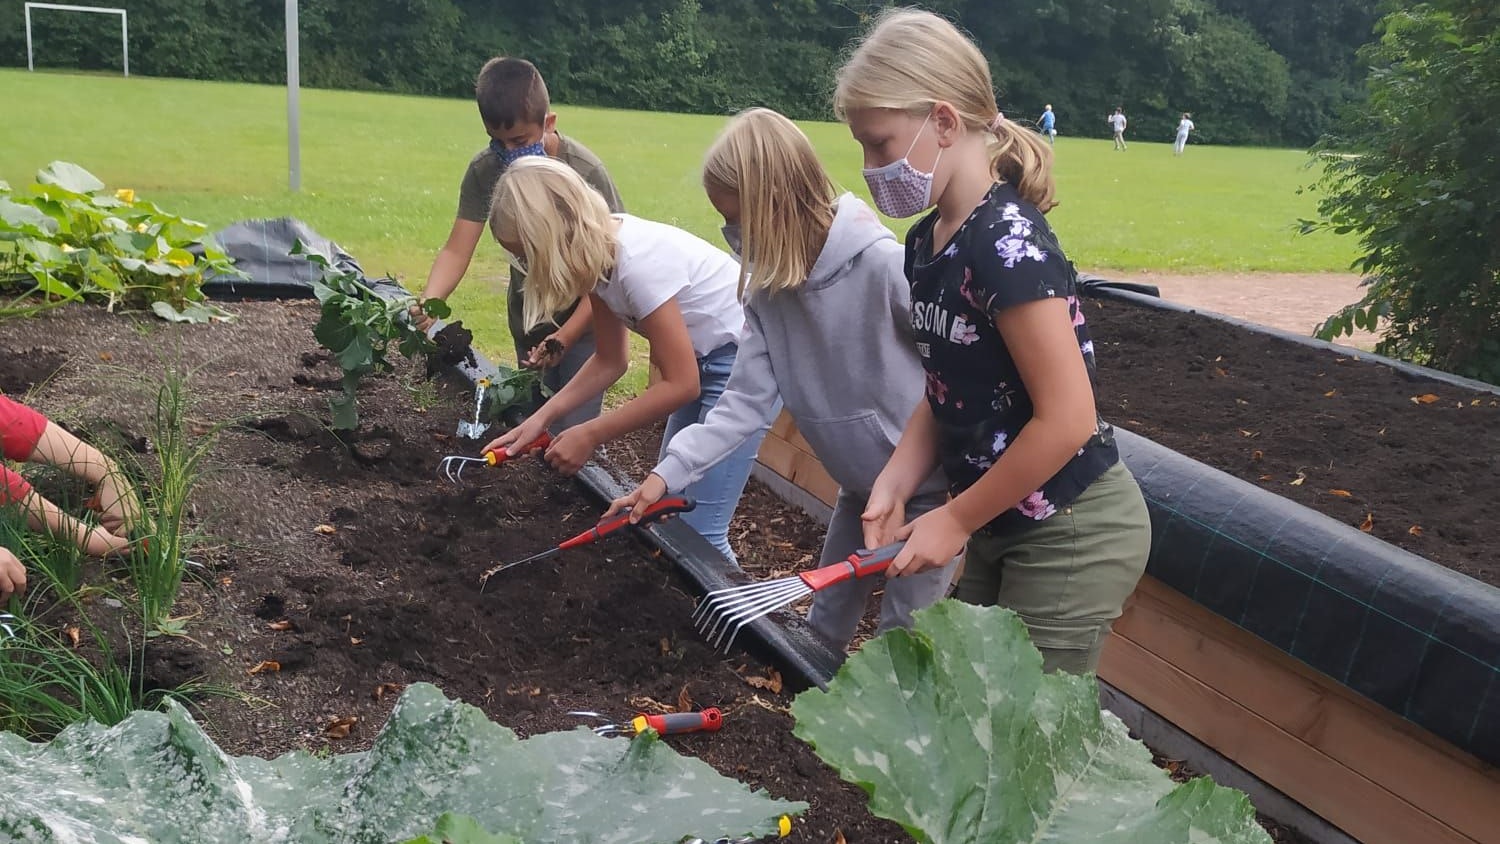 Fleißige Gärtner: Mit großer Freude bauen die Schüler eigenes Gemüse an. Foto: Lamping